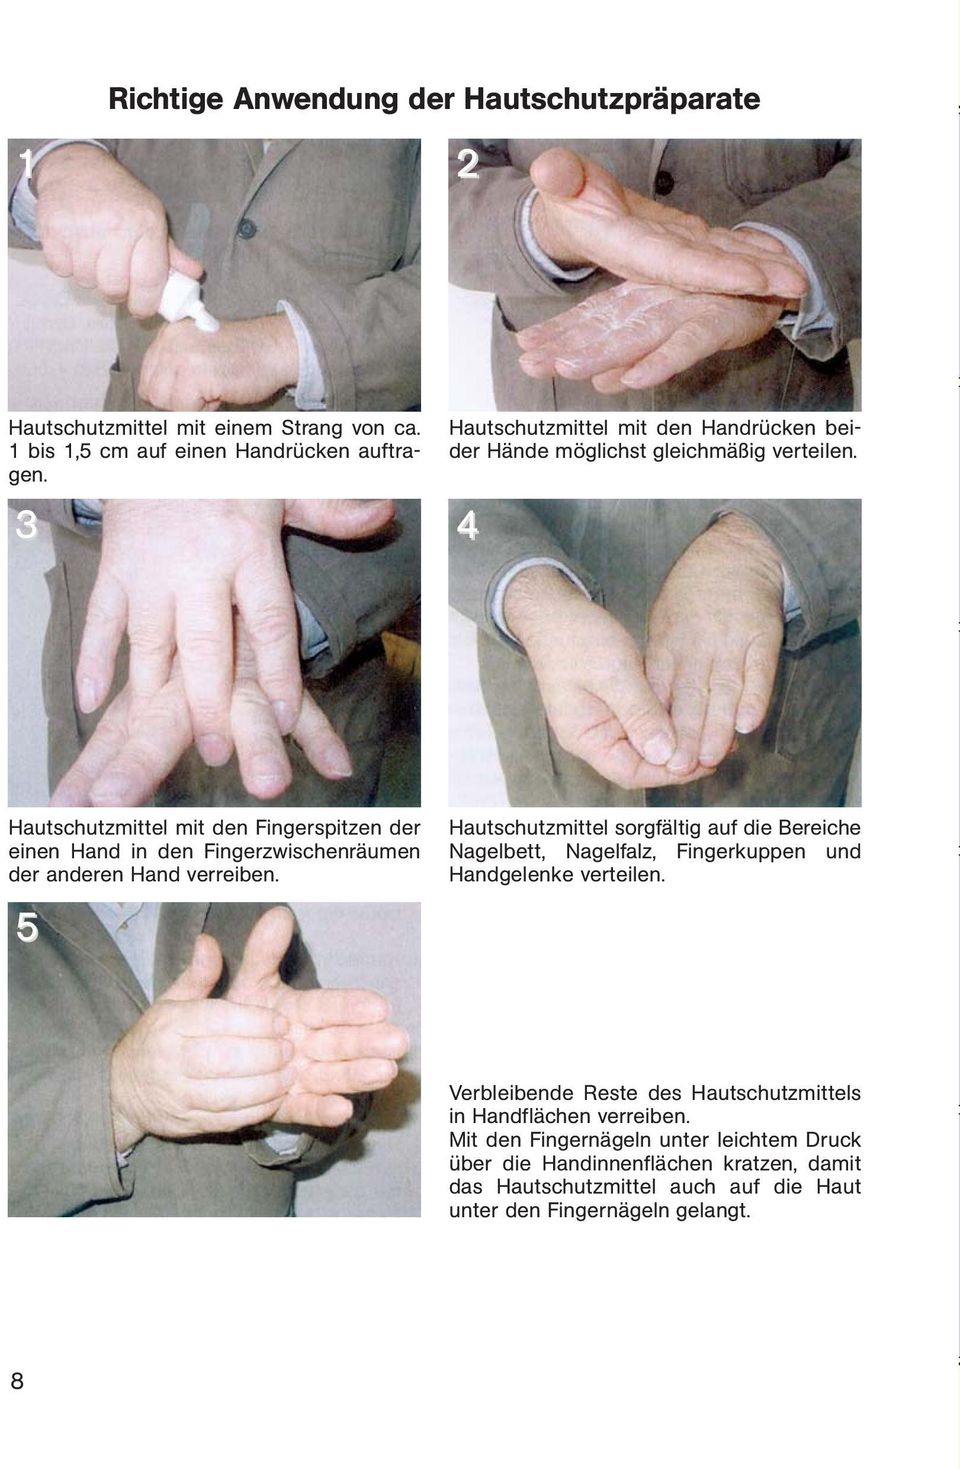 Hautschutzmittel mit den Fingerspitzen der einen Hand in den Fingerzwischenräumen der anderen Hand verreiben.